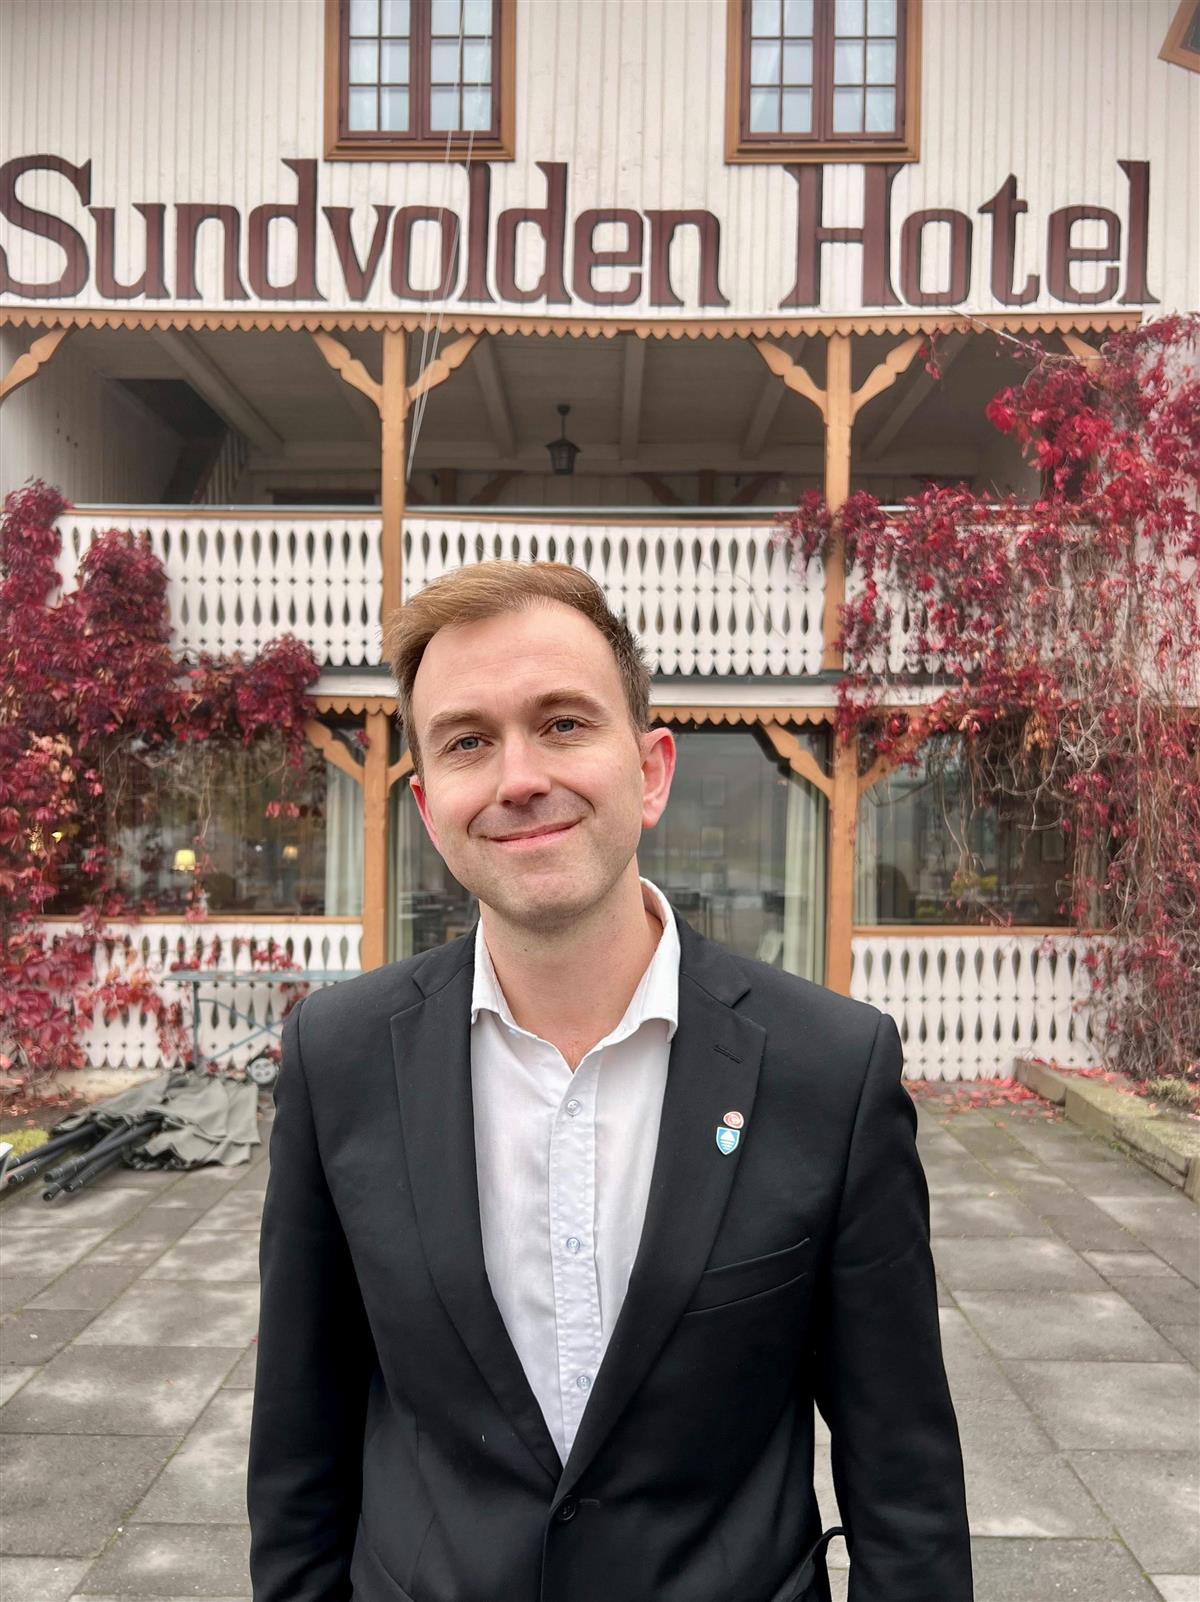 Edvin Søvik i dress står foran inngangen til et hotellbygg - Klikk for stort bilde